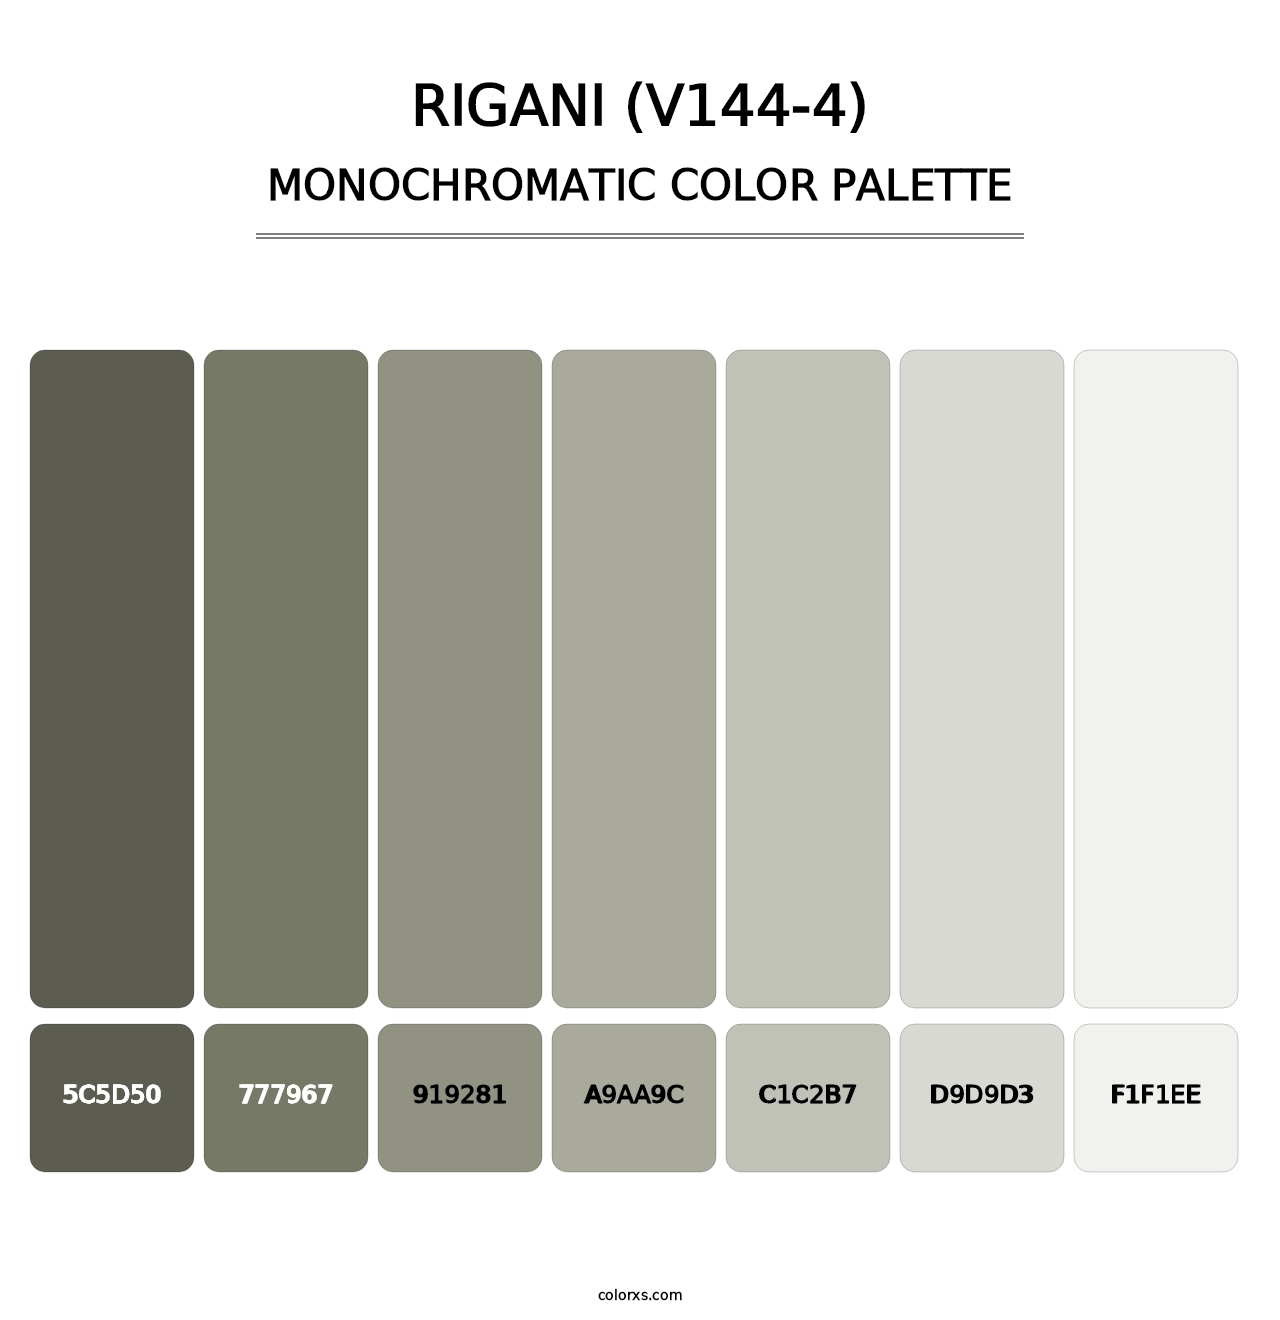 Rigani (V144-4) - Monochromatic Color Palette